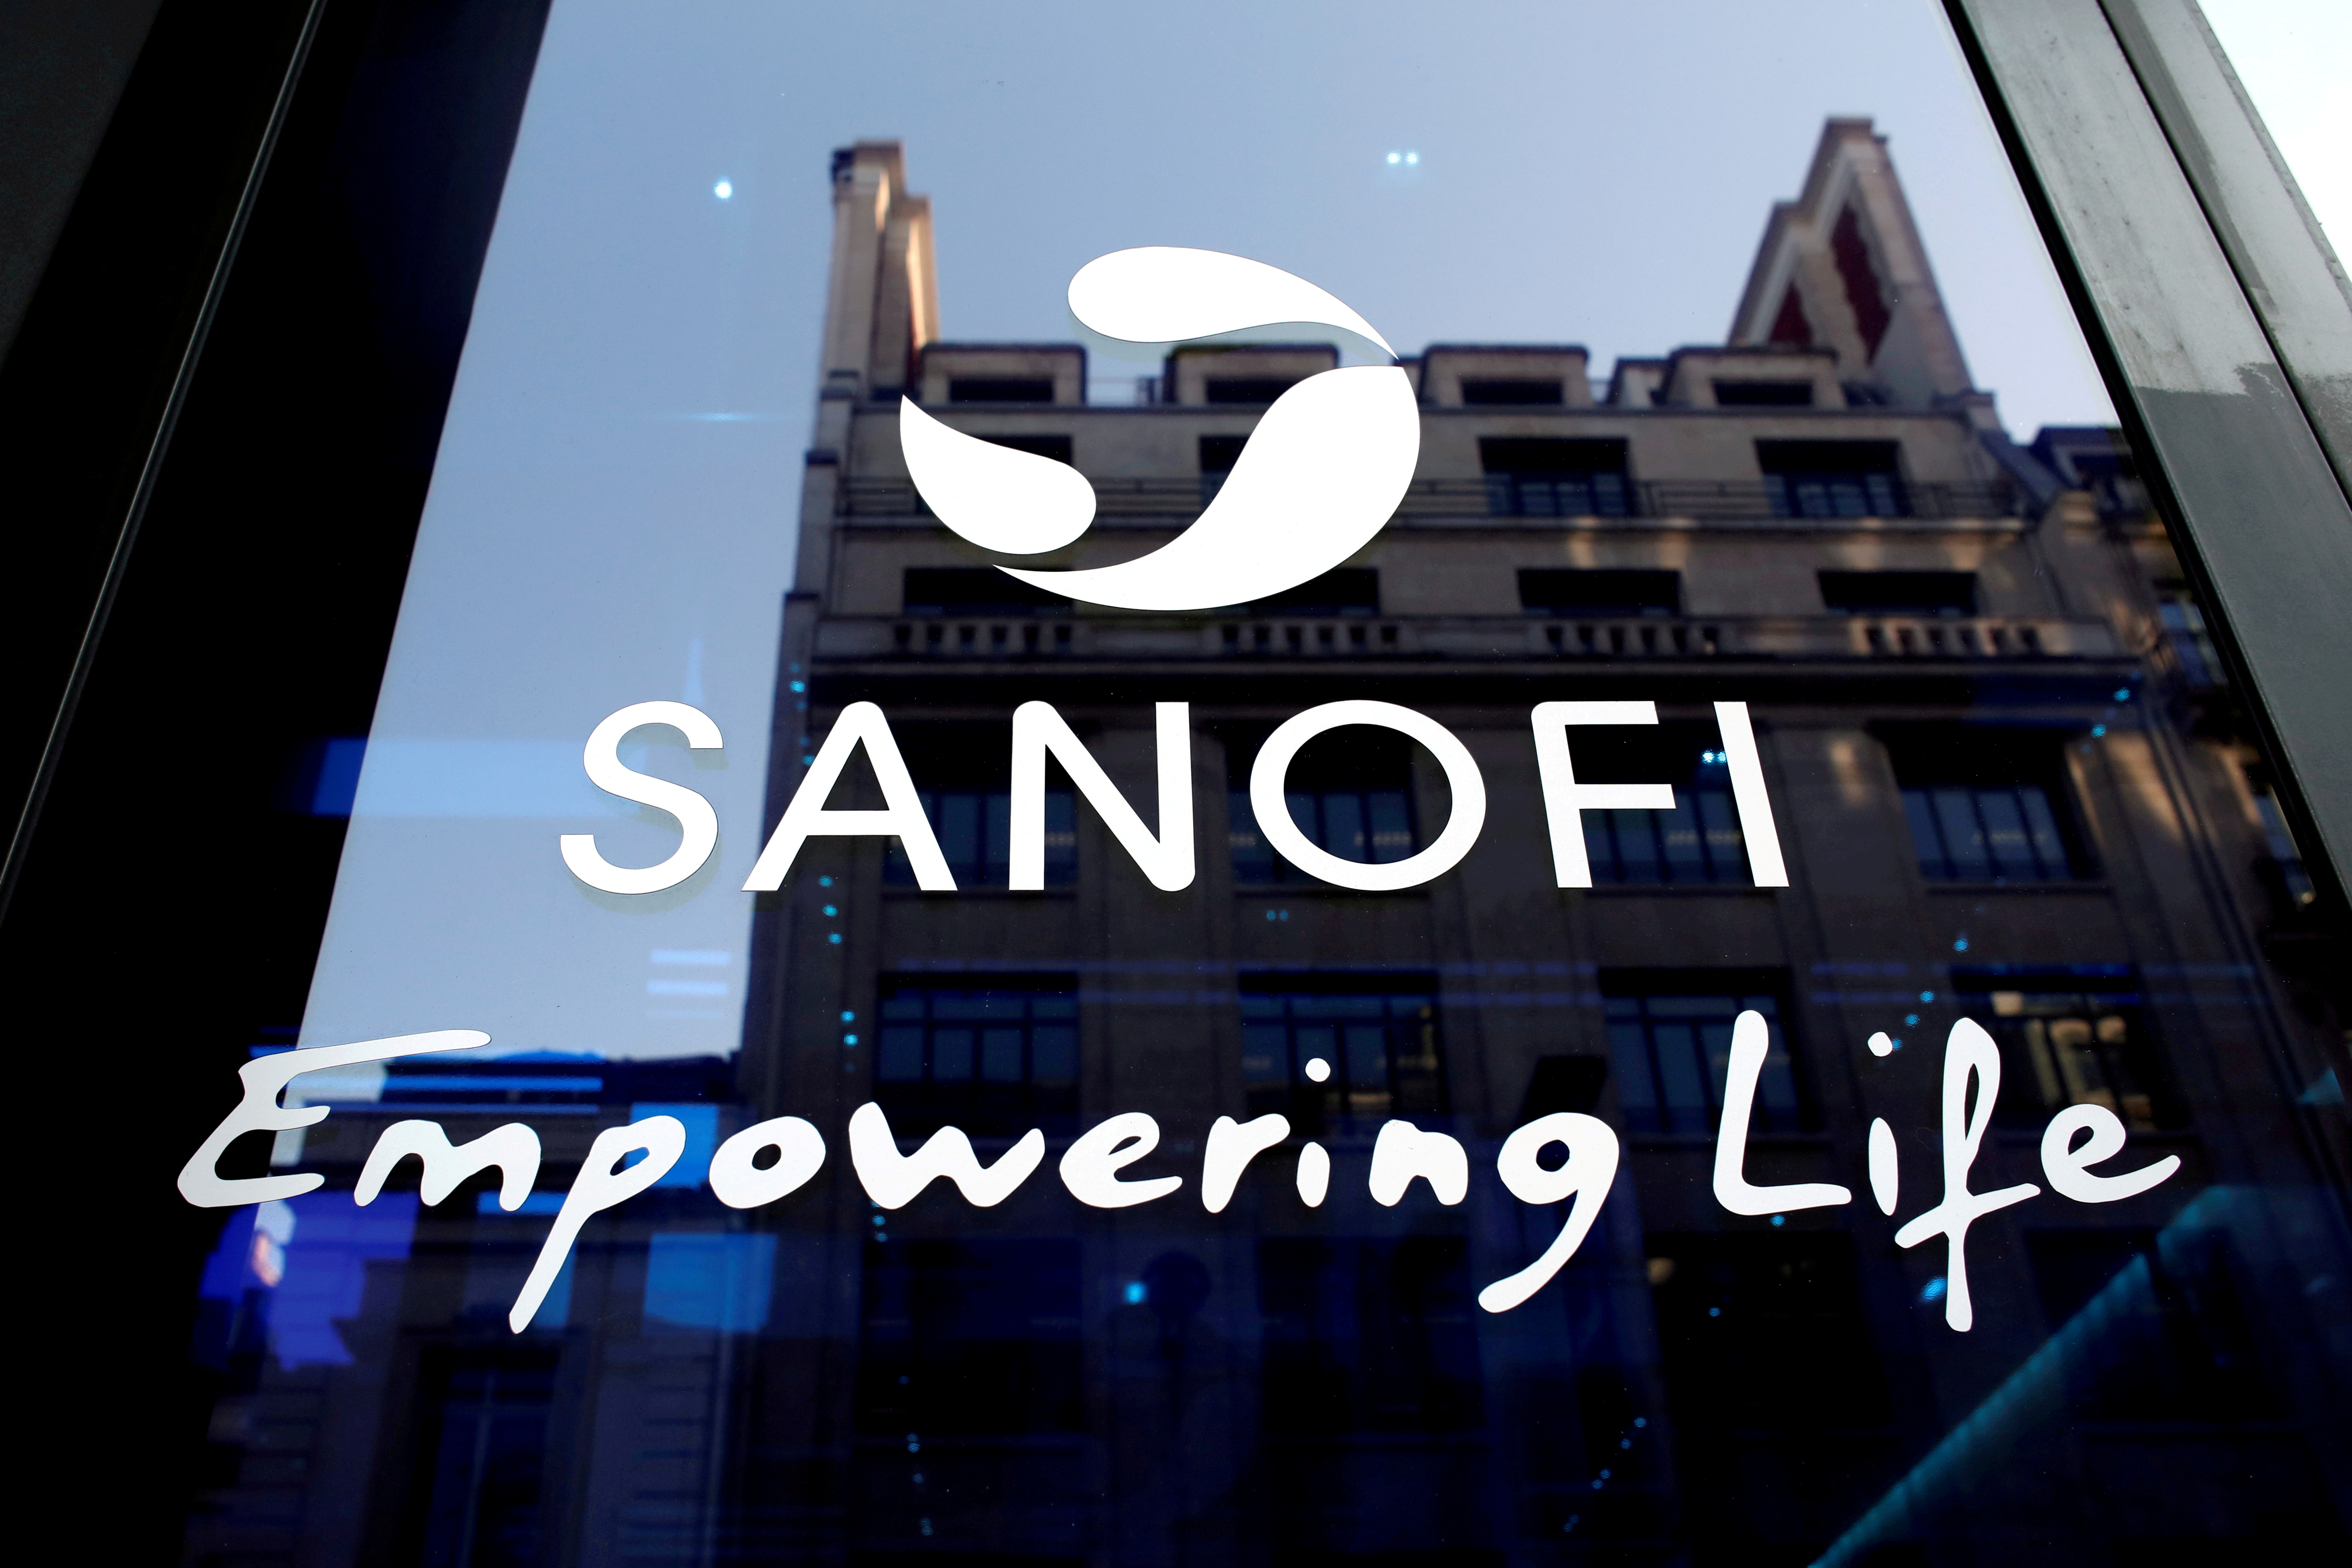 Sanofi porte le congé parental à 14 semaines minimum partout dans le monde